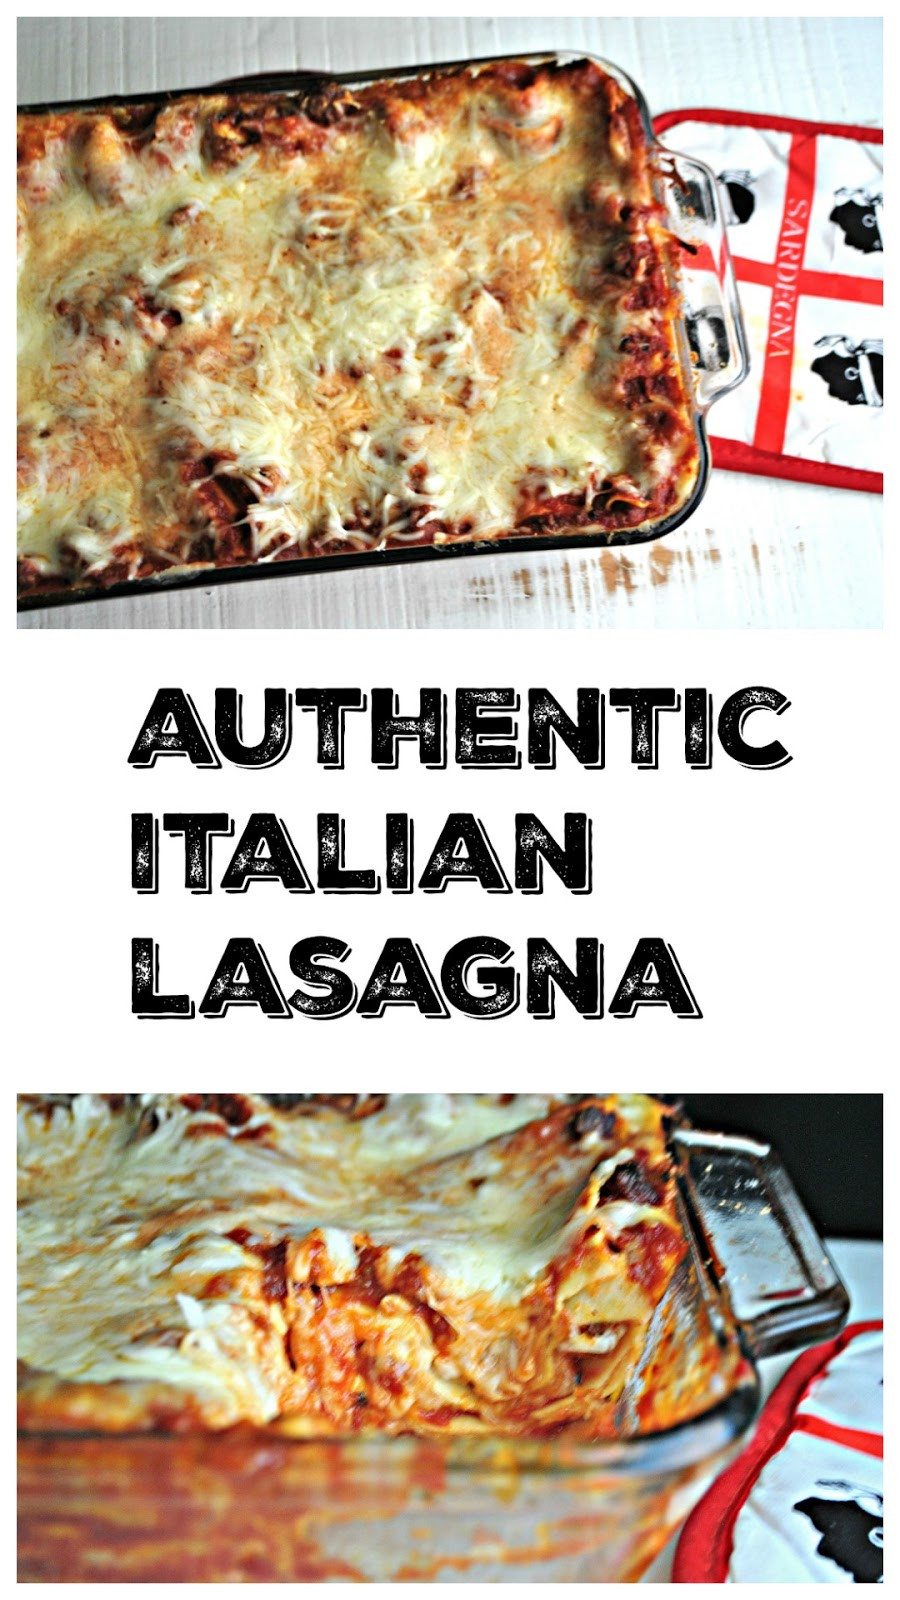 Authentic Italian Lasagna Recipe
 Keat s Eats Authentic Italian Lasagna